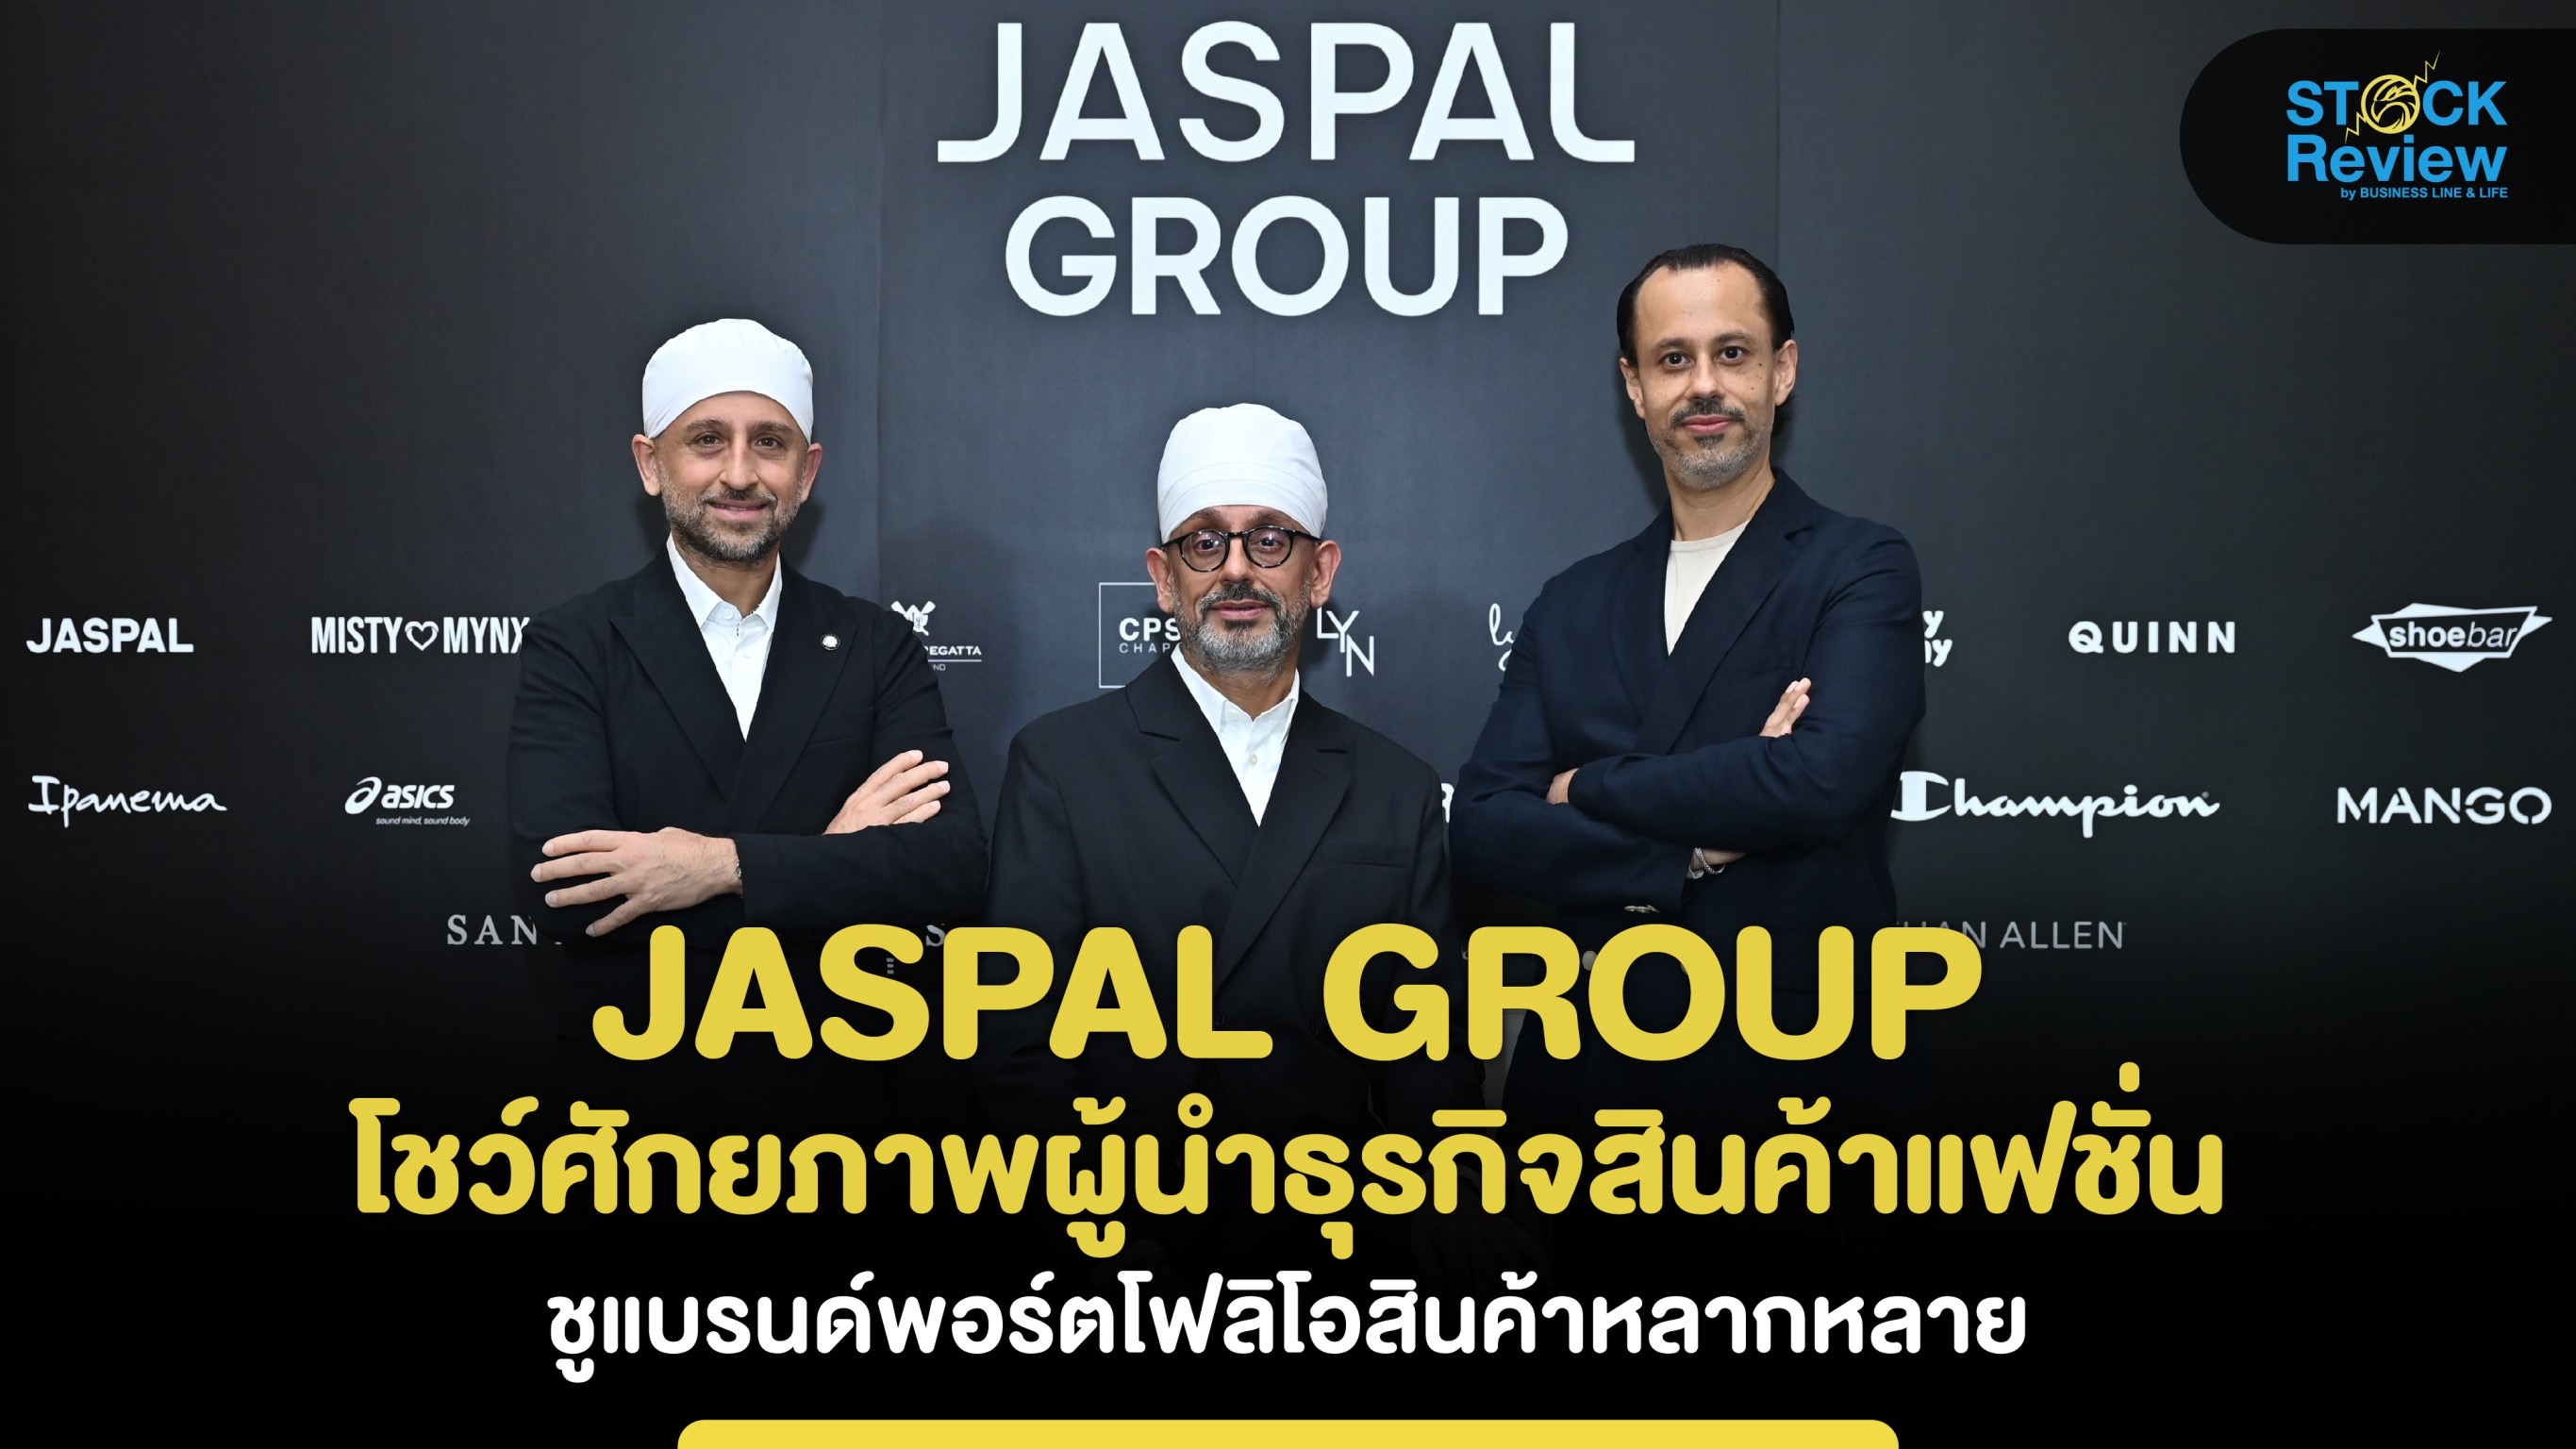 JASPAL GROUP โชว์ศักยภาพผู้นำธุรกิจสินค้าแฟชั่นไลฟ์สไตล์ครอบคลุมทุกกลุ่ม